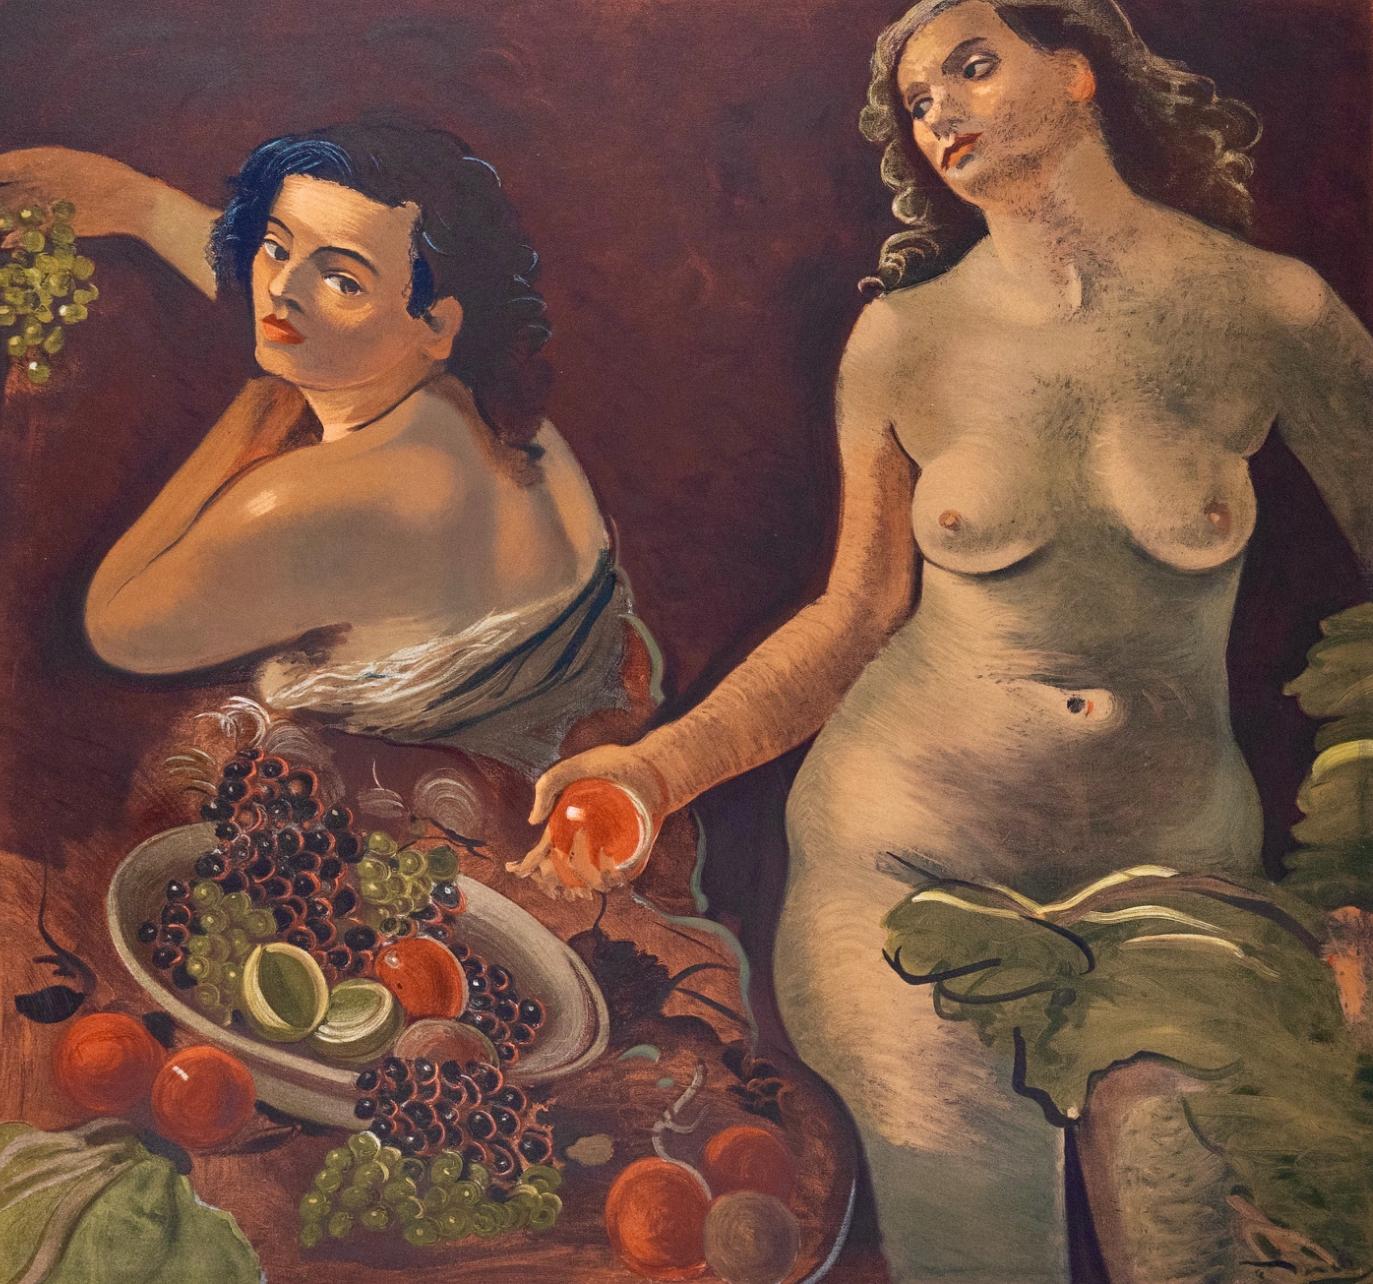 Derain, Deux femmes nues et nature morte, André Derain entre 1935-1949 (after)